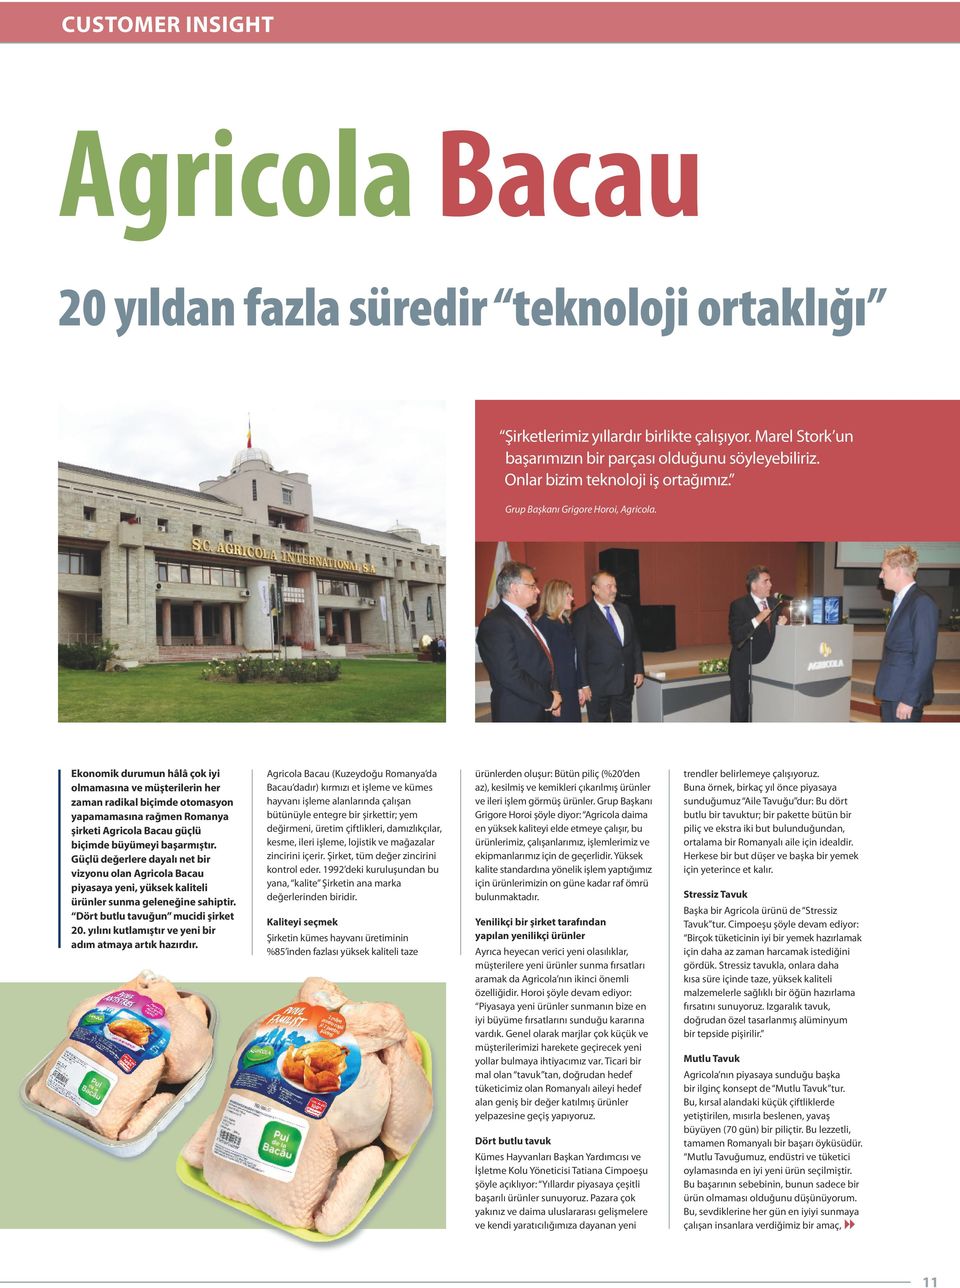 Ekonomik durumun hâlâ çok iyi olmamasına ve müşterilerin her zaman radikal biçimde otomasyon yapamamasına rağmen Romanya şirketi Agricola Bacau güçlü biçimde büyümeyi başarmıştır.